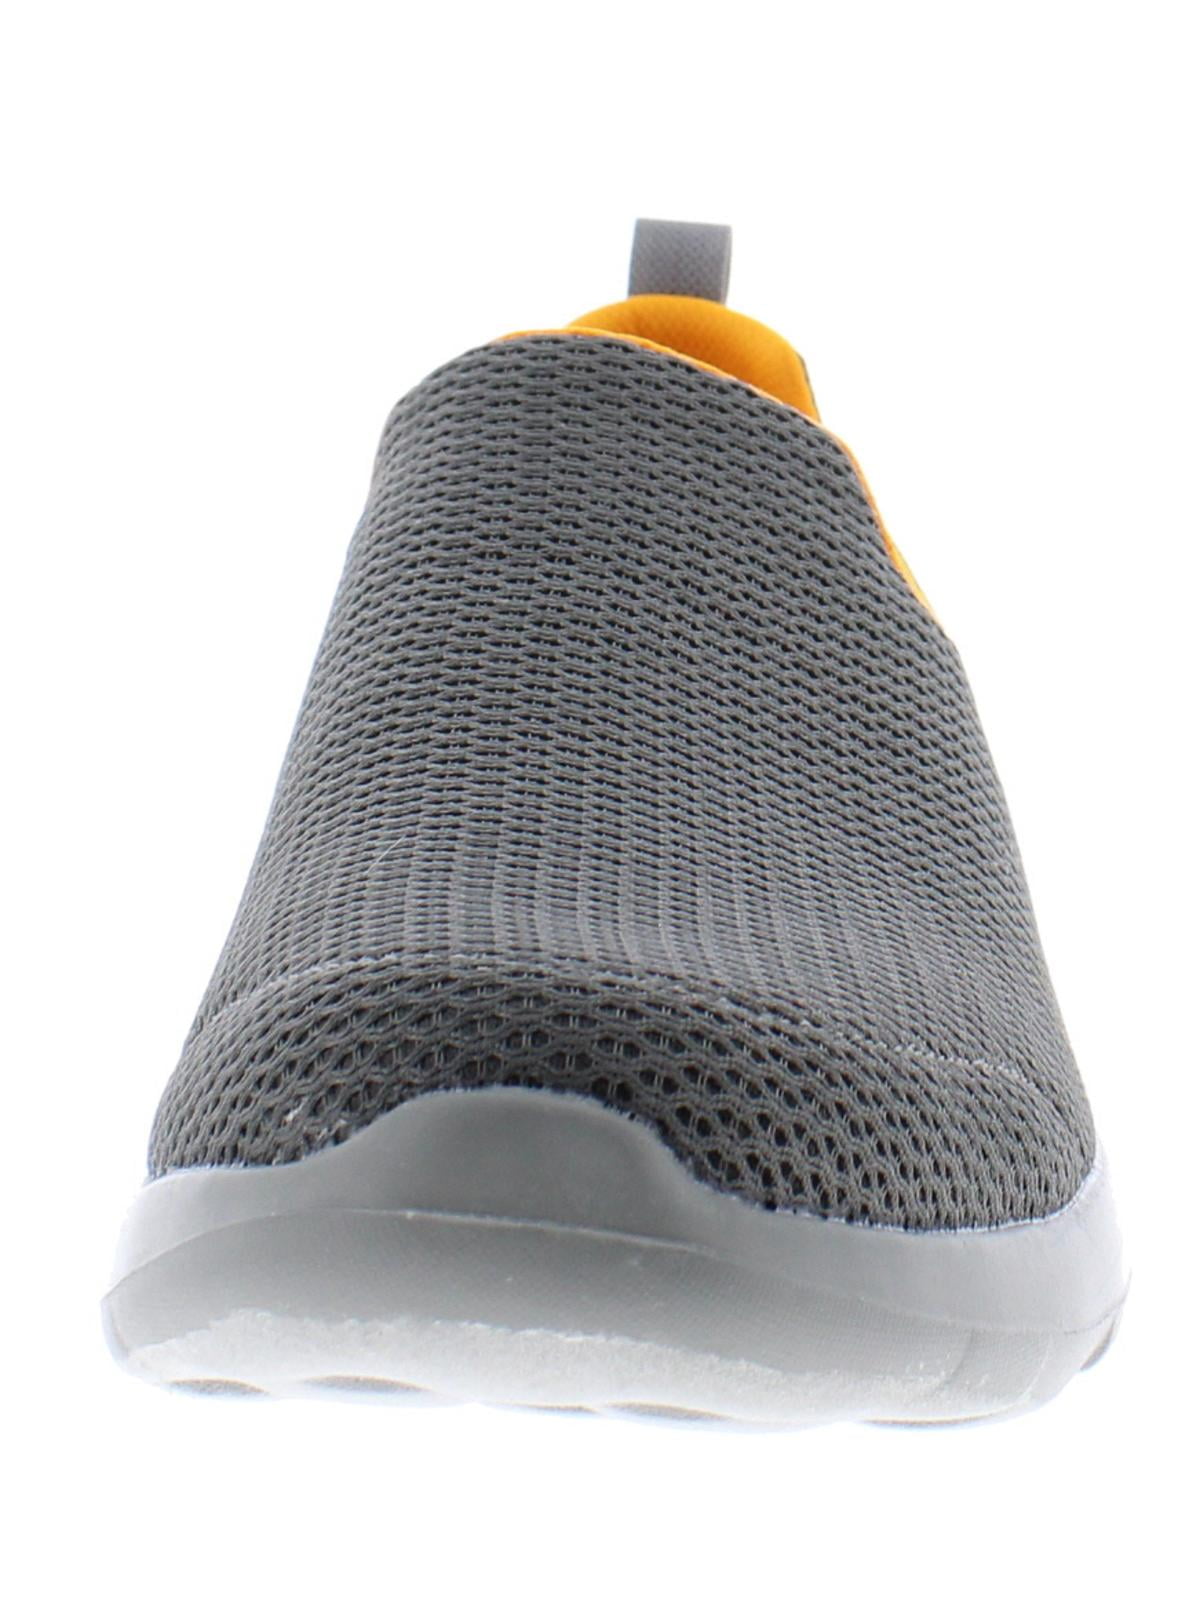 人気の製品 Skechers Performance Men's Go Walk Max Wide Sneaker%ｶﾝﾏ% charcoal%ｶﾝﾏ%  8.5 EEE US